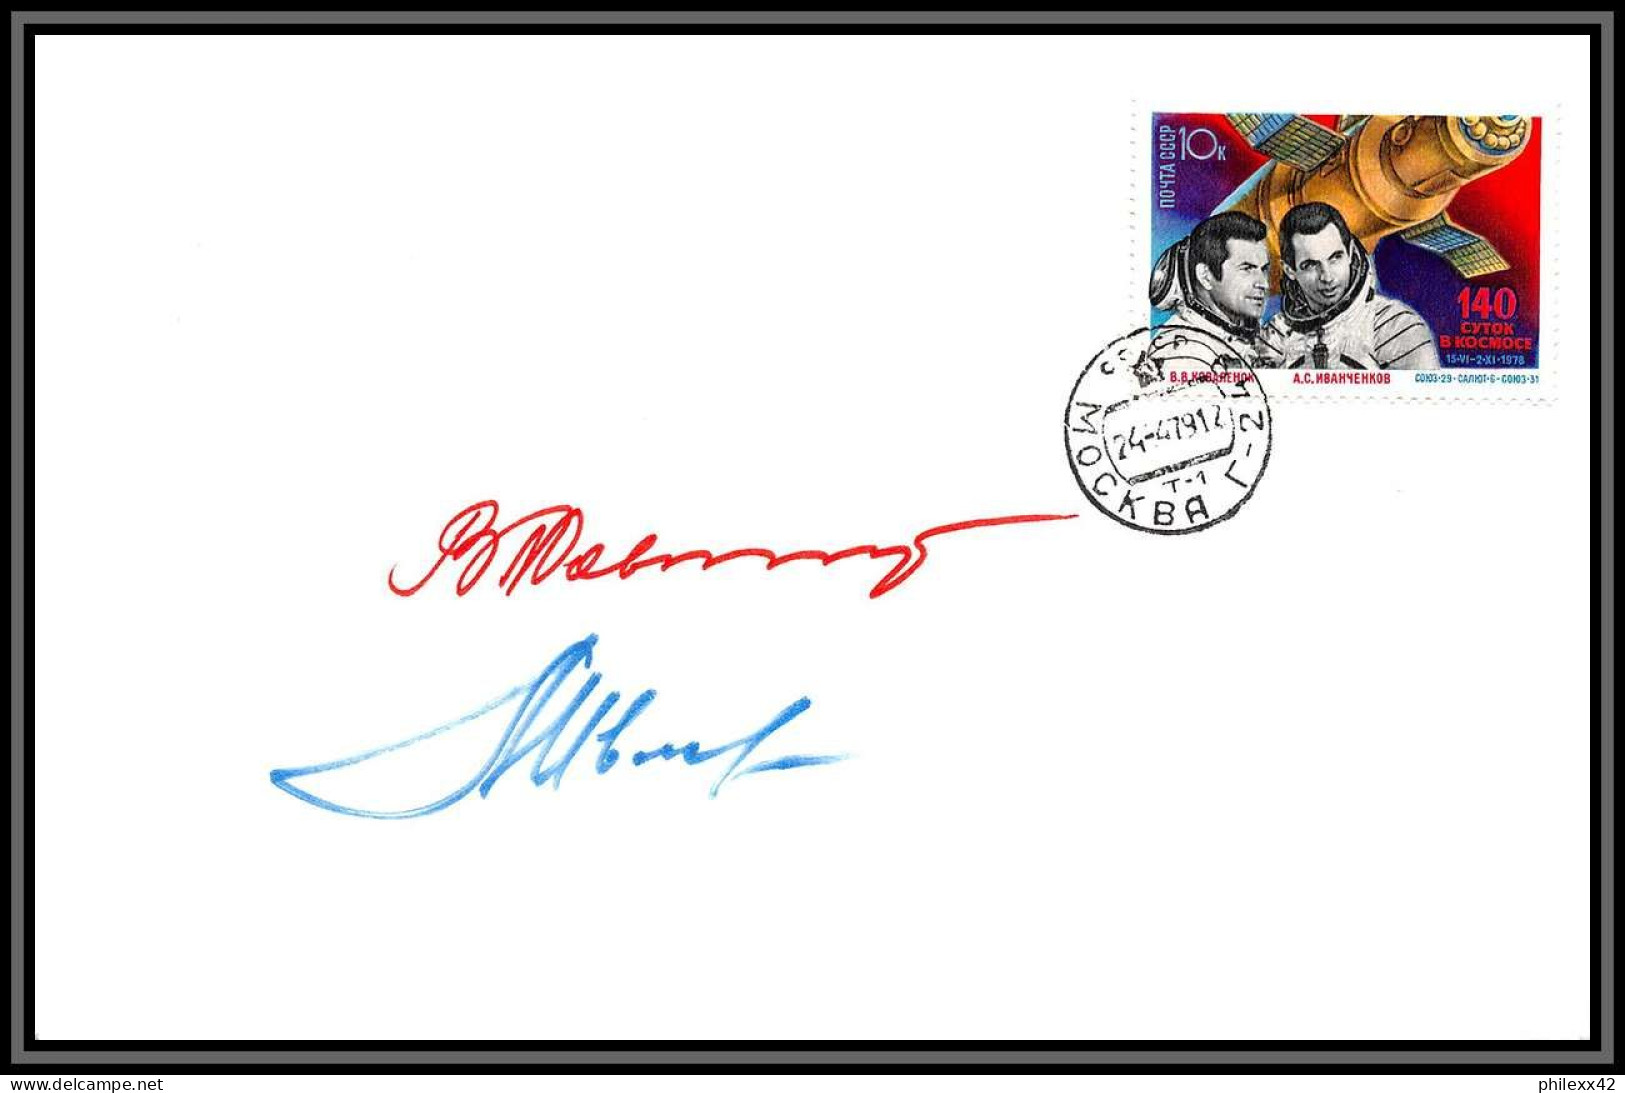 3500X Espace Space Lettre Cover Signé Signed Autograph Ivanchenkov Cosmonauts Russia Urss USSR 24/4/1979 Soyuz Soyouz 31 - UdSSR